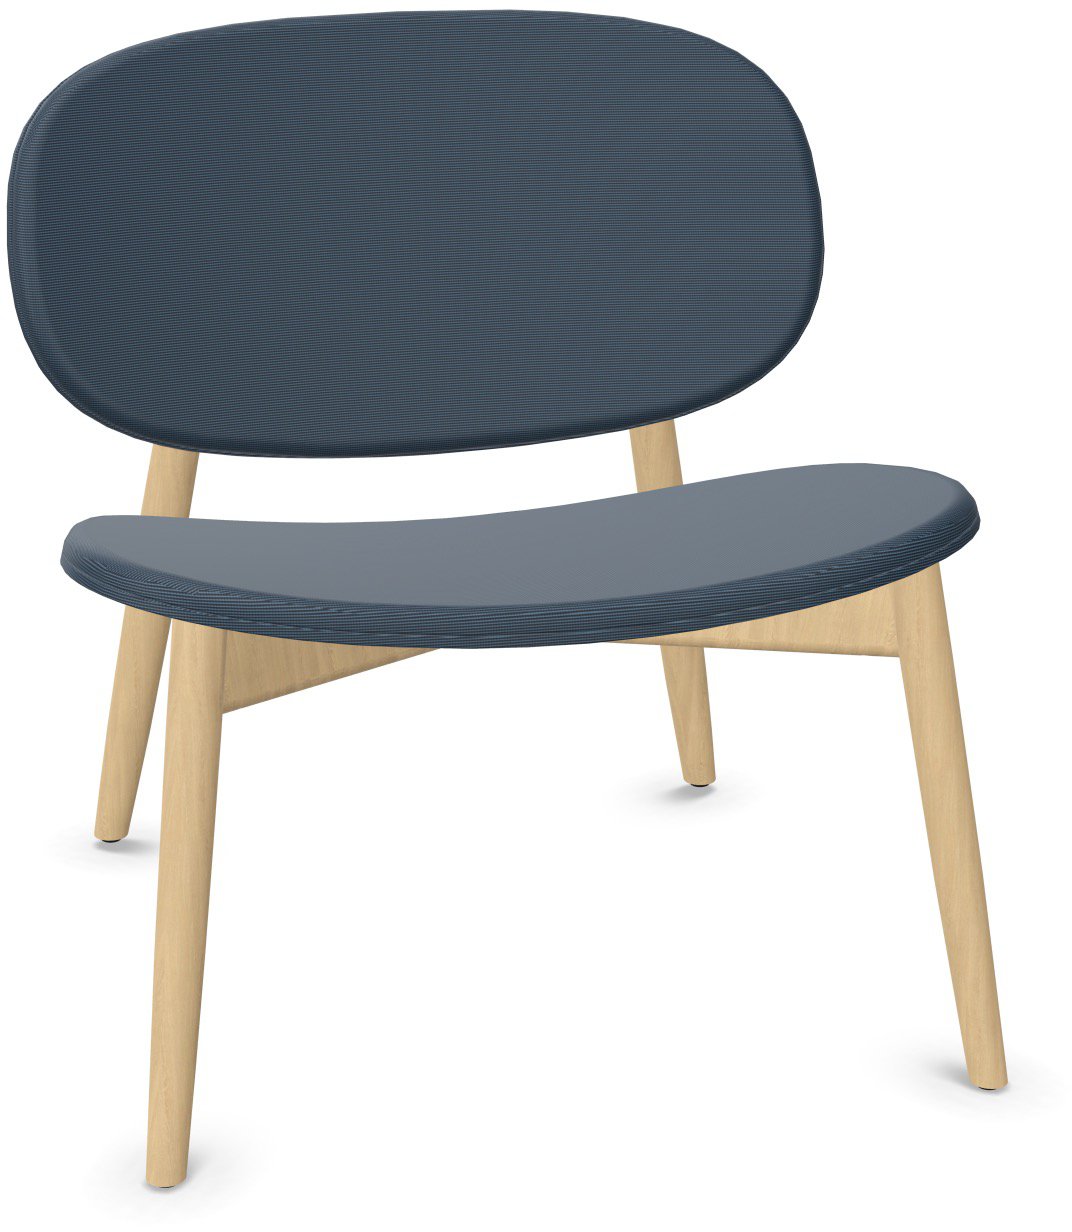 HARMO Relaxsessel in Dunkelblau präsentiert im Onlineshop von KAQTU Design AG. Sessel ist von Infiniti Design